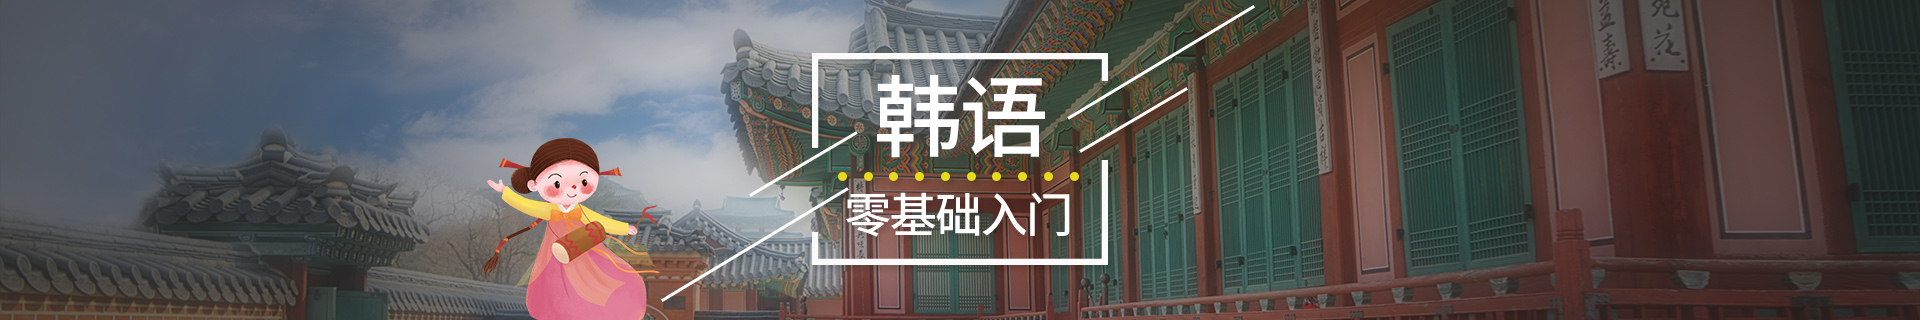 广州新通教育培训机构